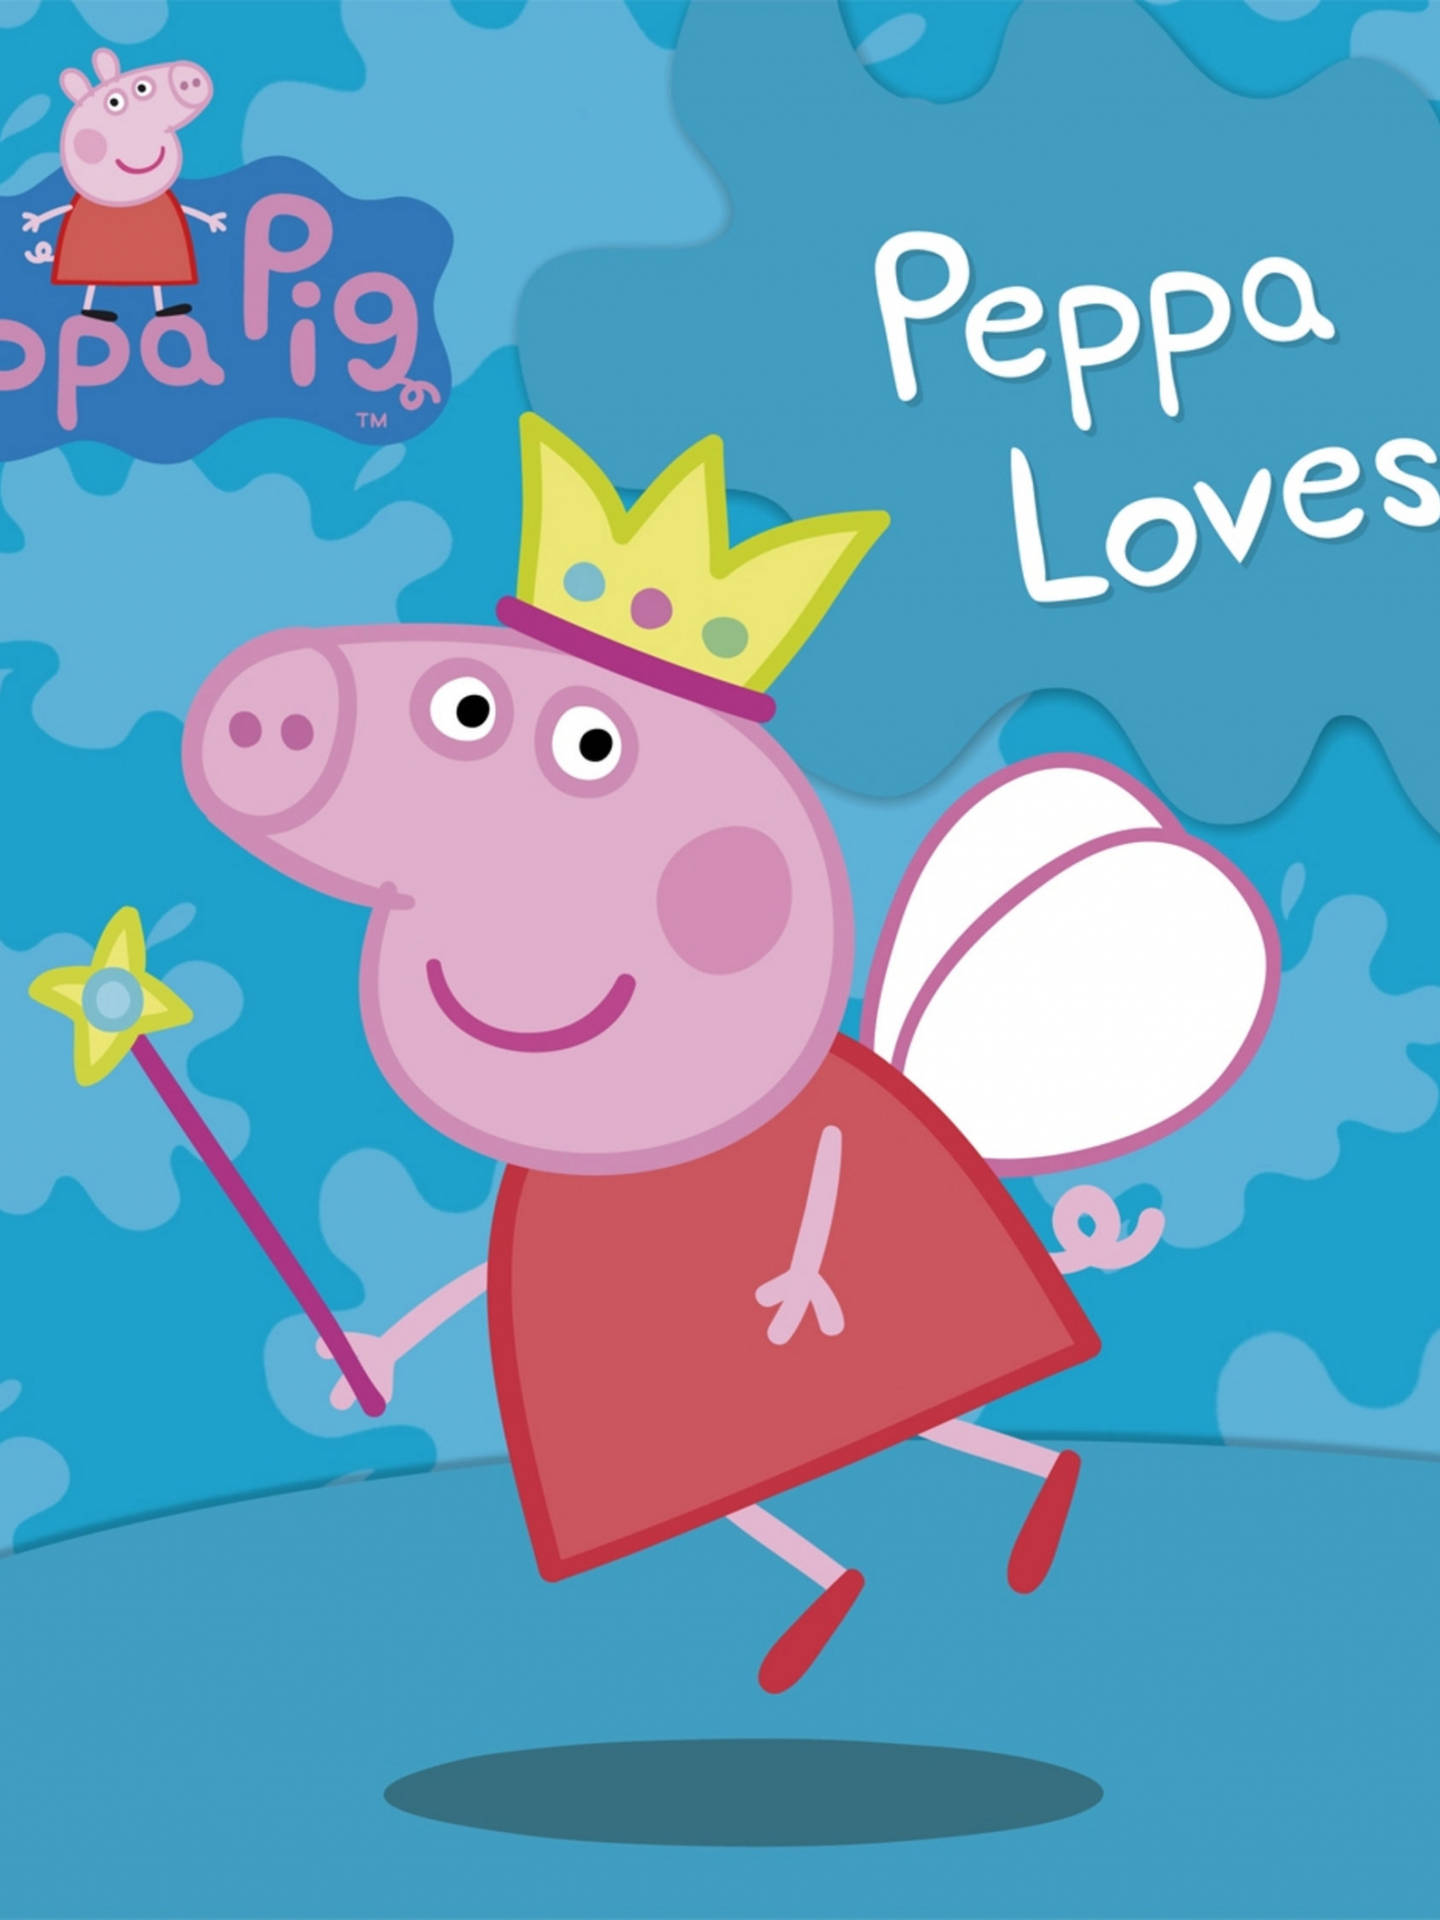 Fairy Queen Peppa Pig wallpaper.